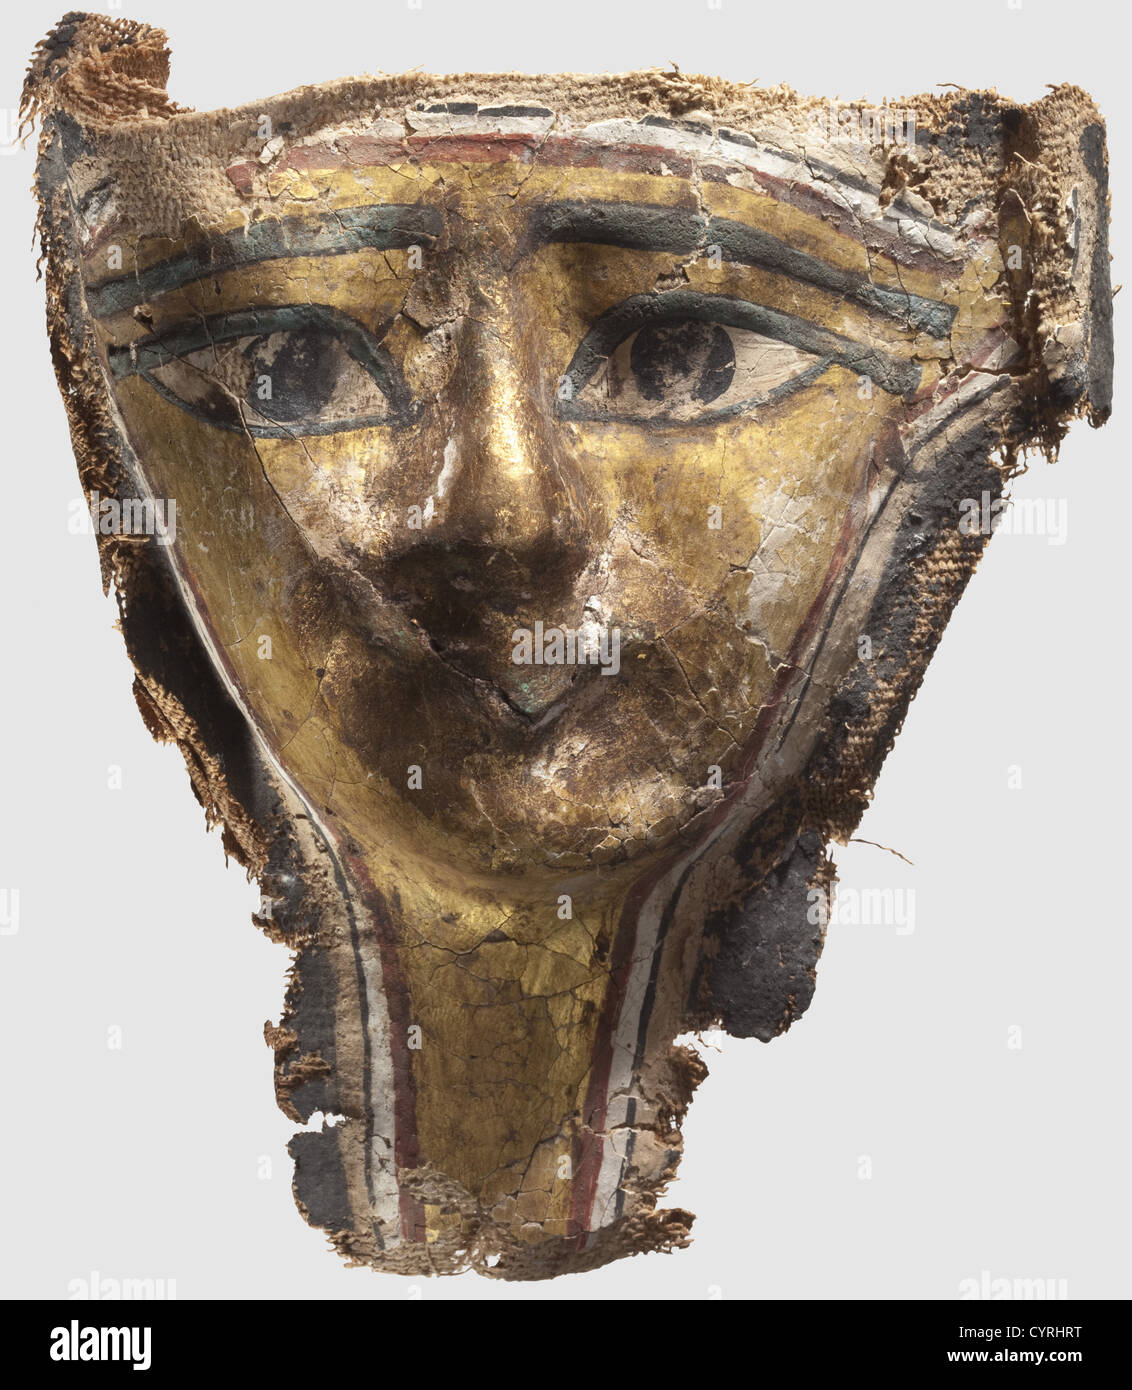 Eine ägyptische Mumienmaske, New Kingdom, 12-10. Jahrhundert v. Chr. Maske  in Hochrelief, aus drei Lagen Leinen, die Rückseite des Nasenabschnitts mit Gips  verstärkt. Die Vorderseite mit fein bemalter, teilweise vergoldeter Maske  auf